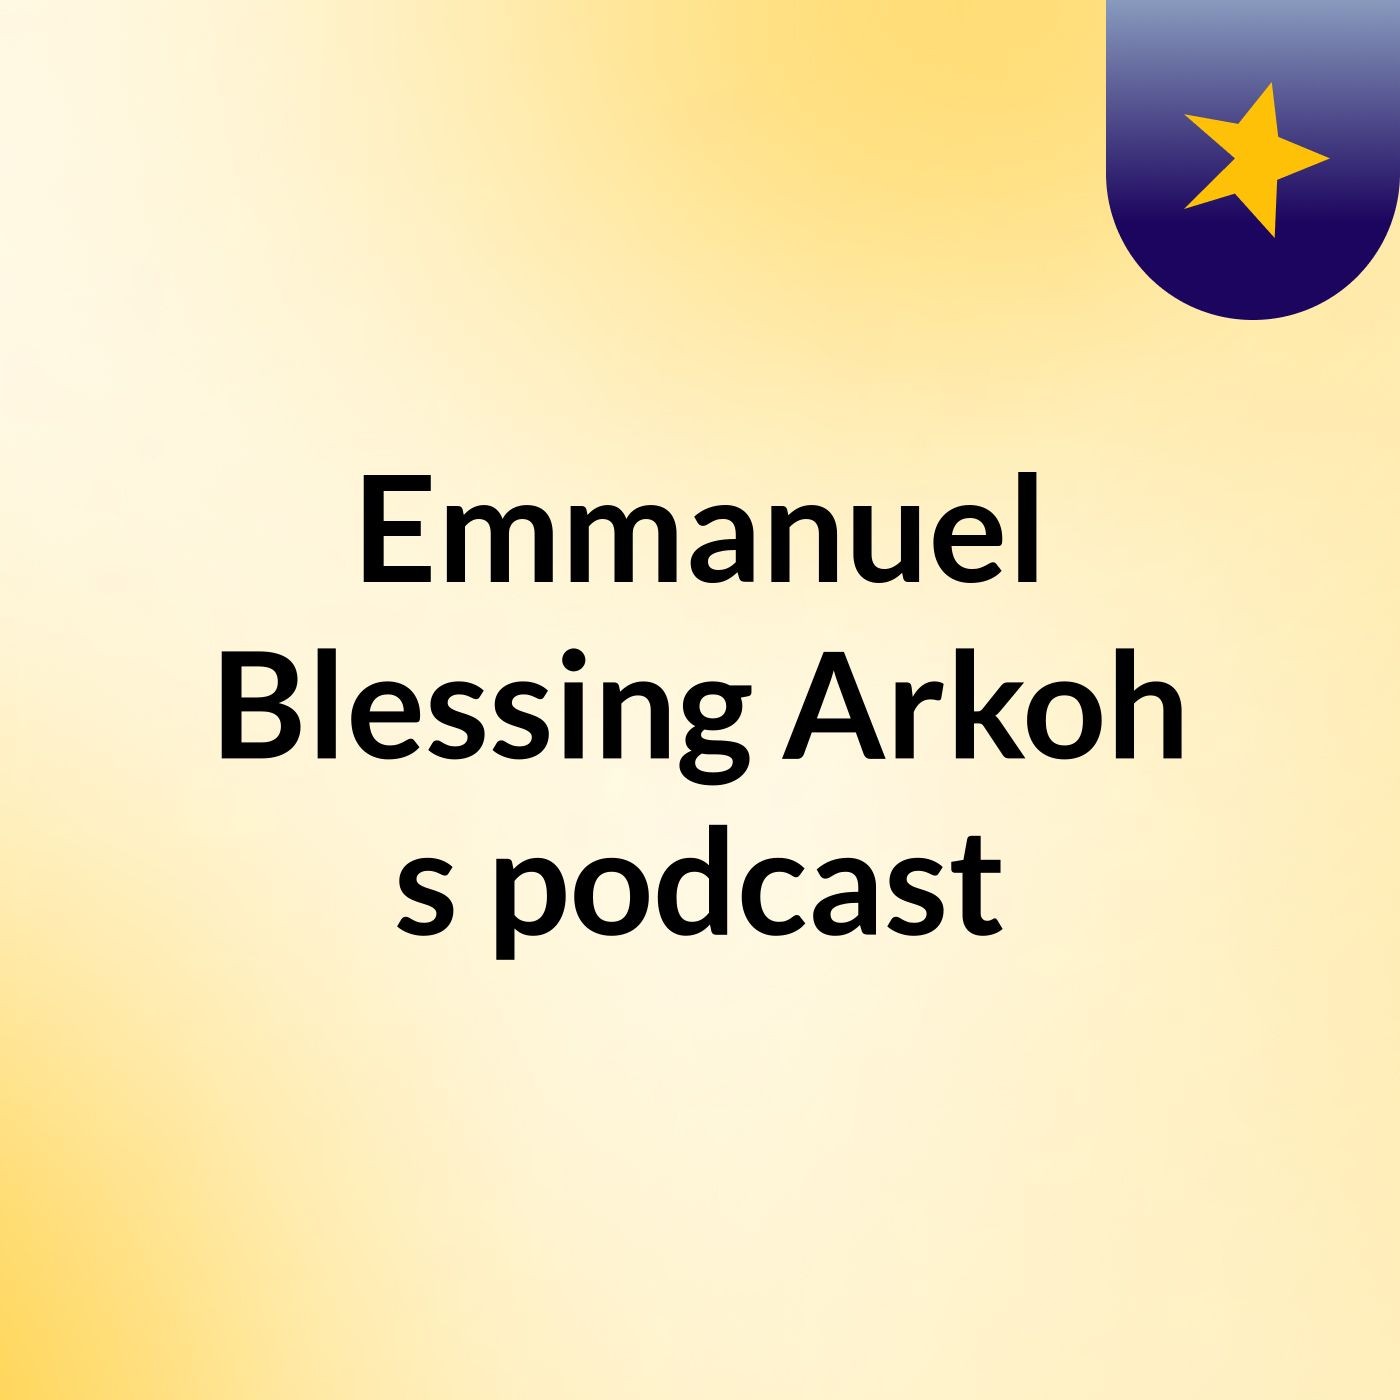 Episode 13 - Emmanuel Blessing Arkoh's podcast